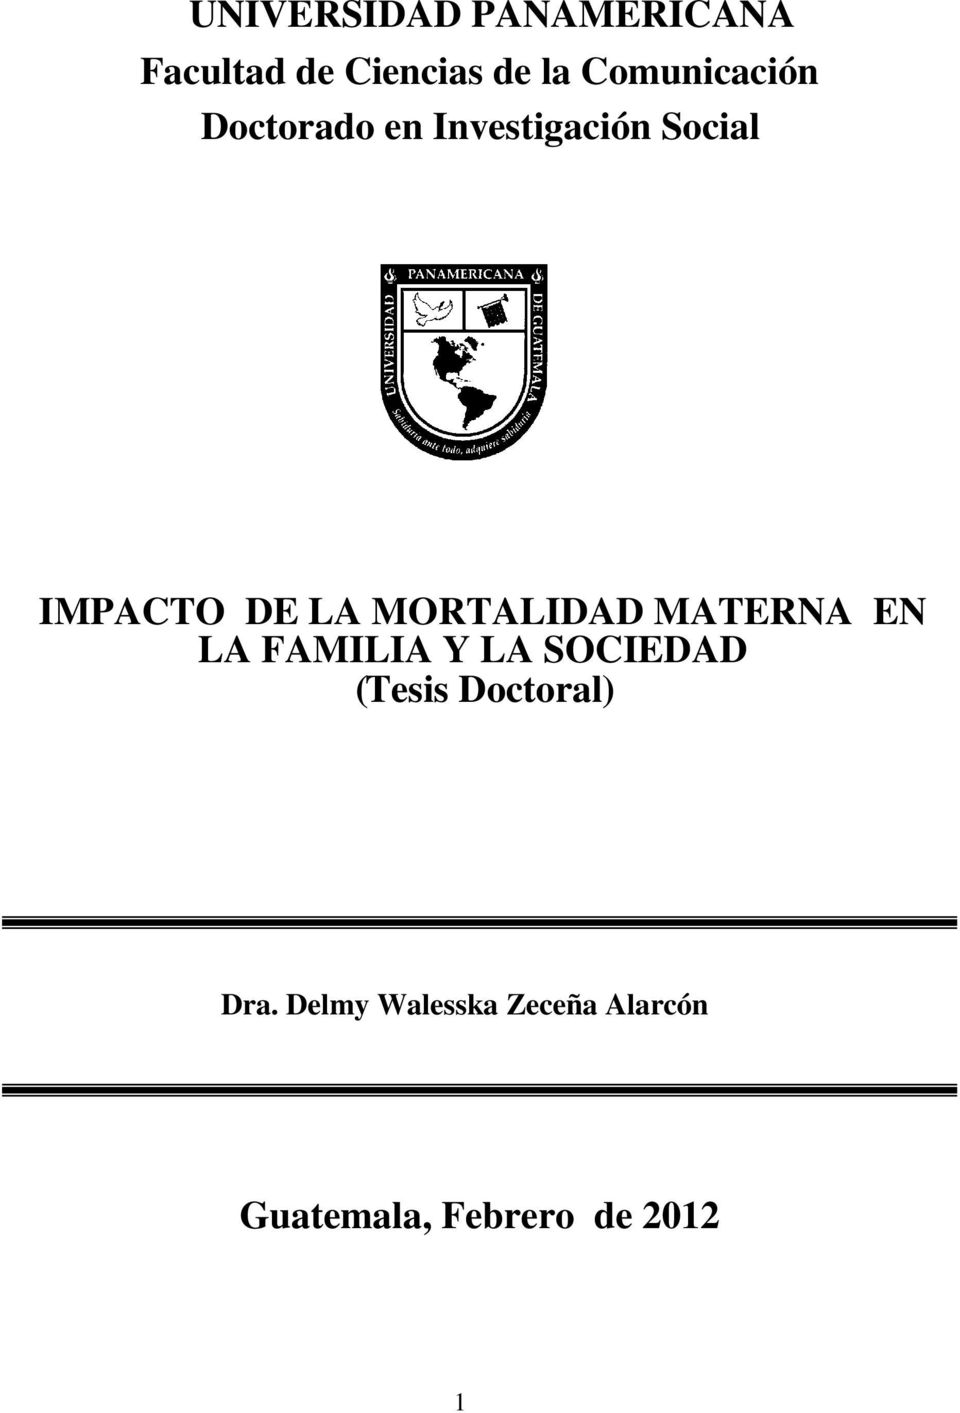 MORTALIDAD MATERNA EN LA FAMILIA Y LA SOCIEDAD ( Tesis